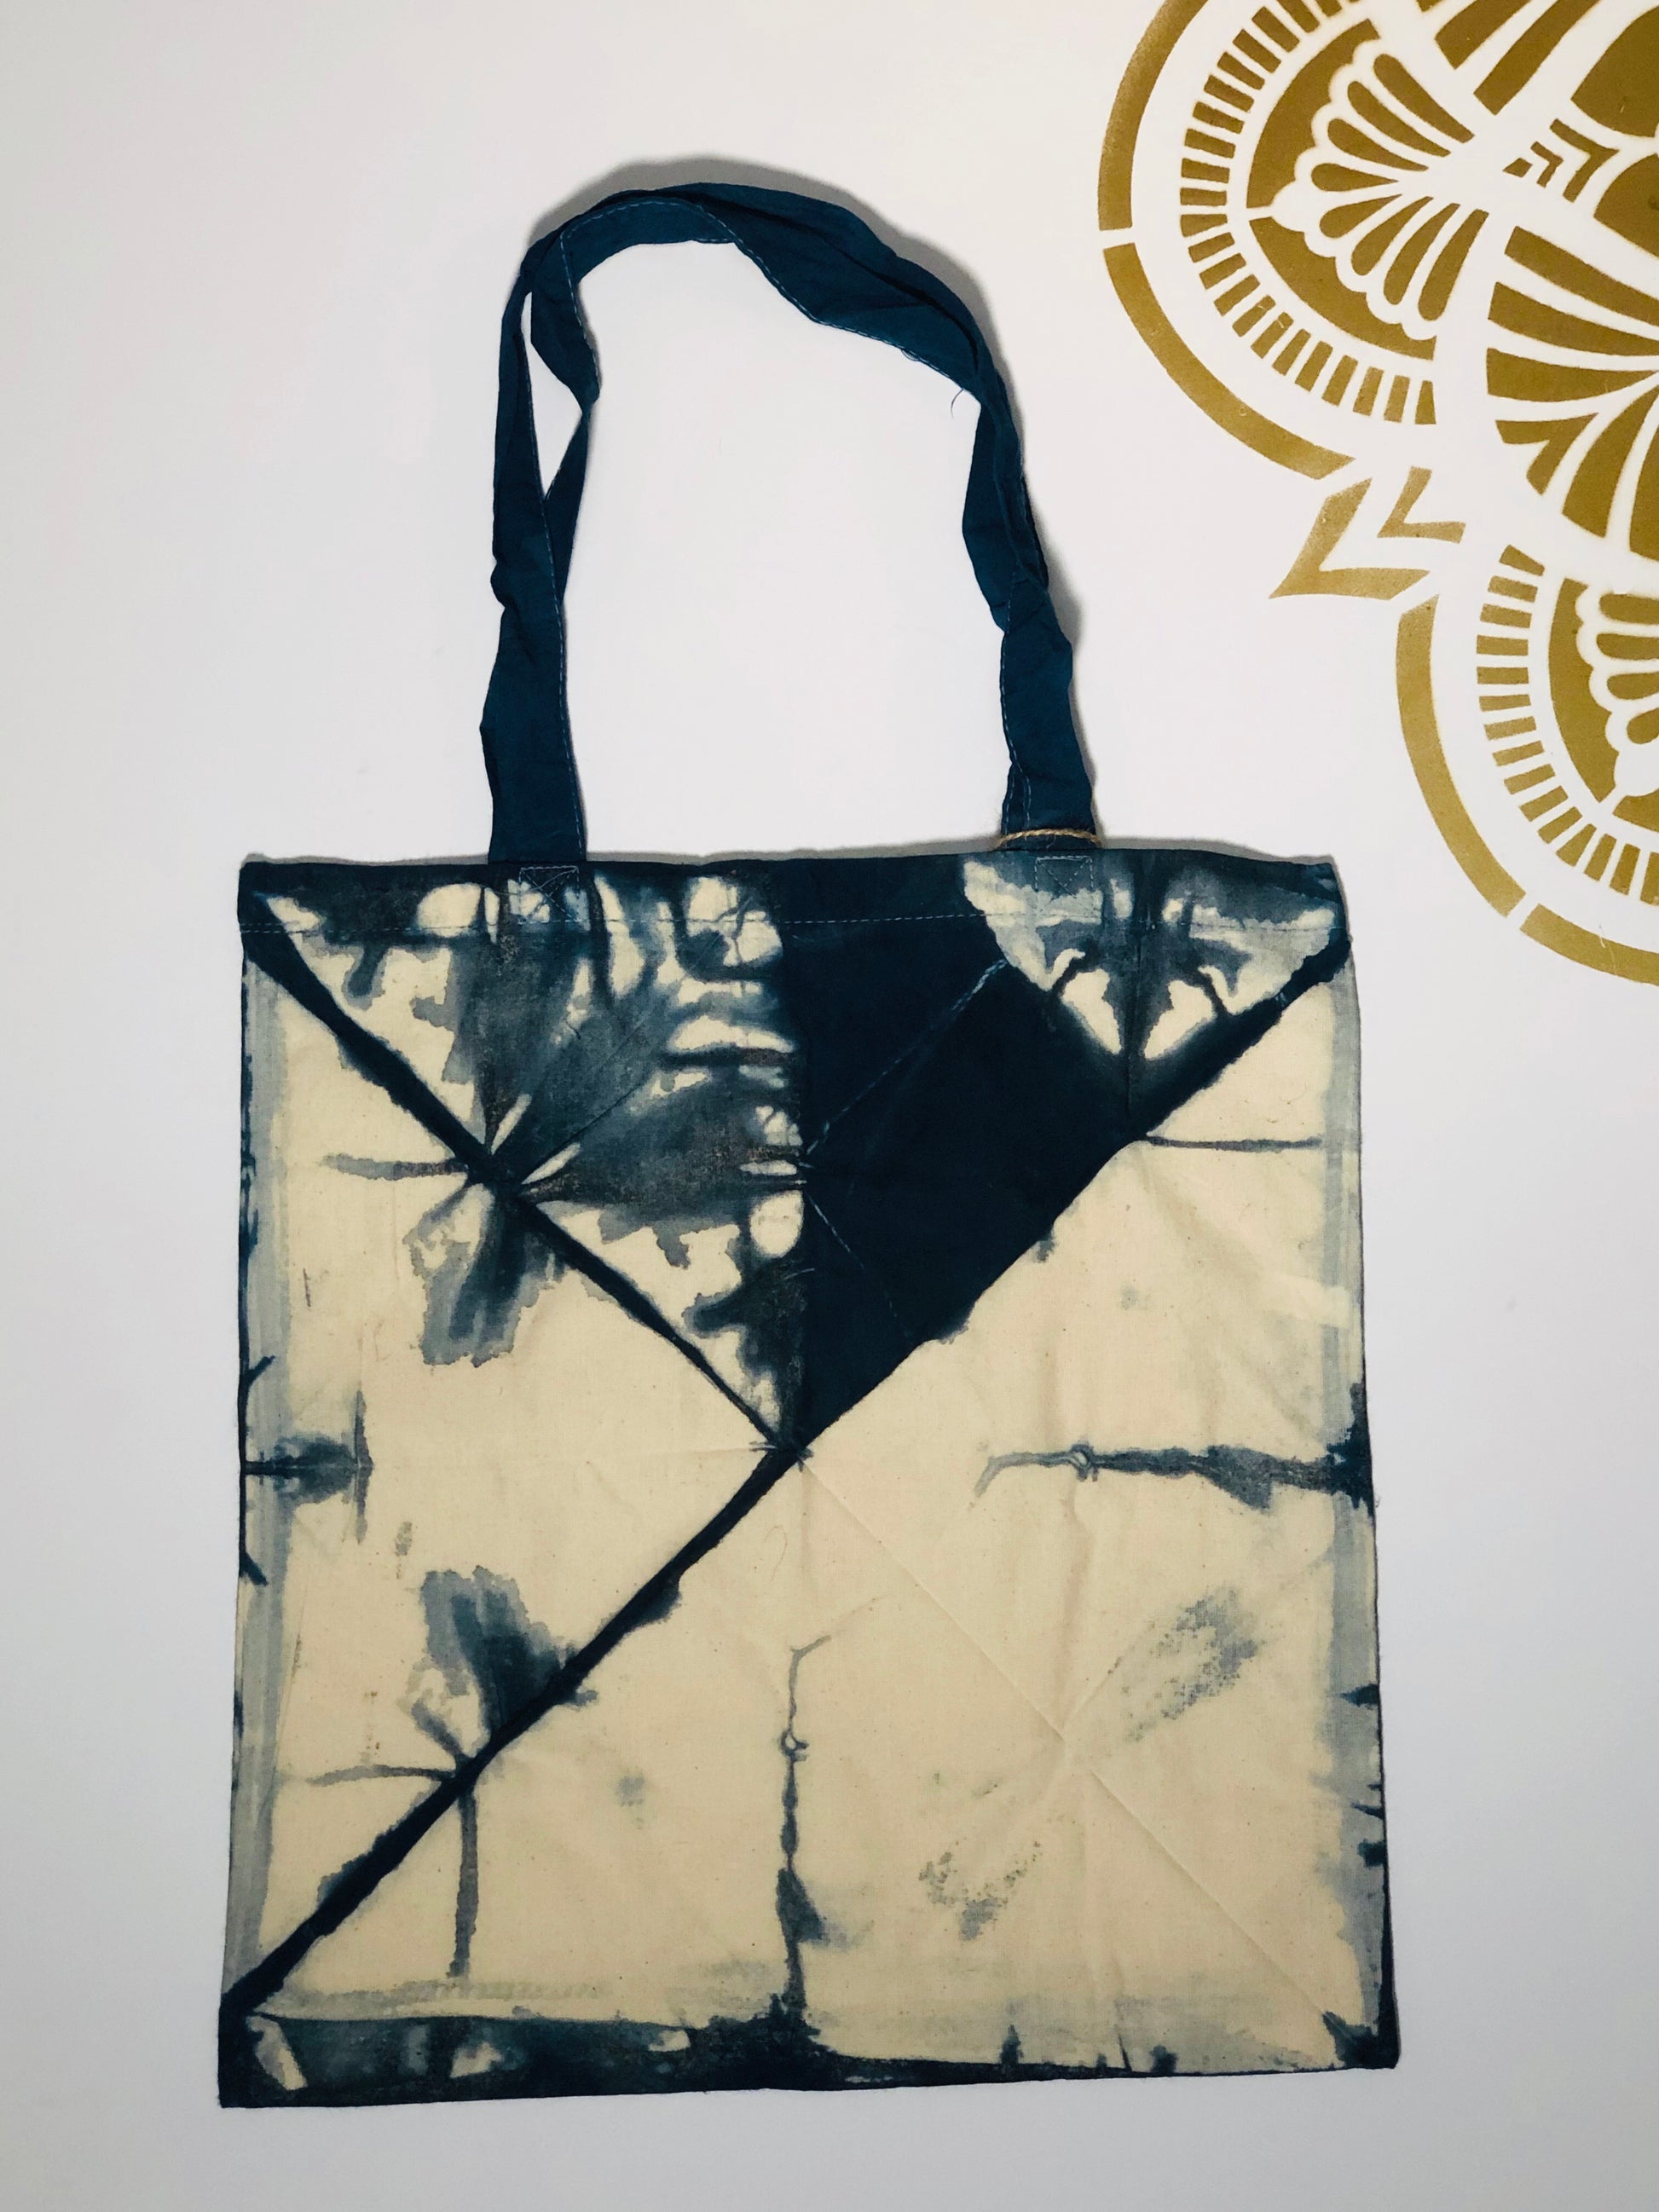 Shibori Tote Bag #4 - Ola Wyola